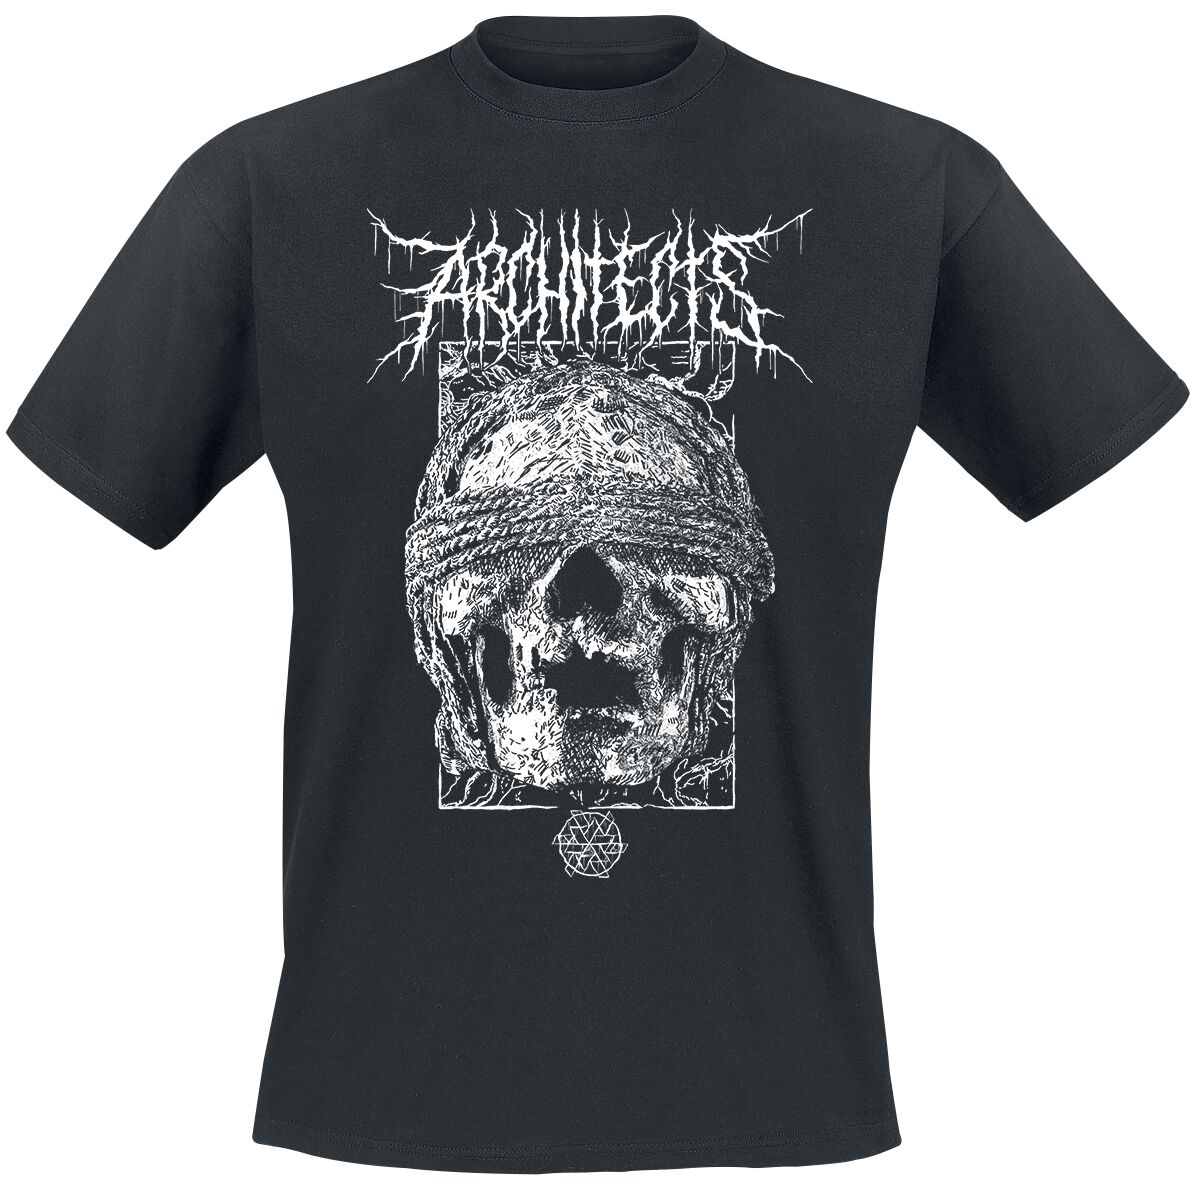 Architects T-Shirt - Blindfolded Skull - S bis XXL - für Männer - Größe S - schwarz  - Lizenziertes Merchandise!